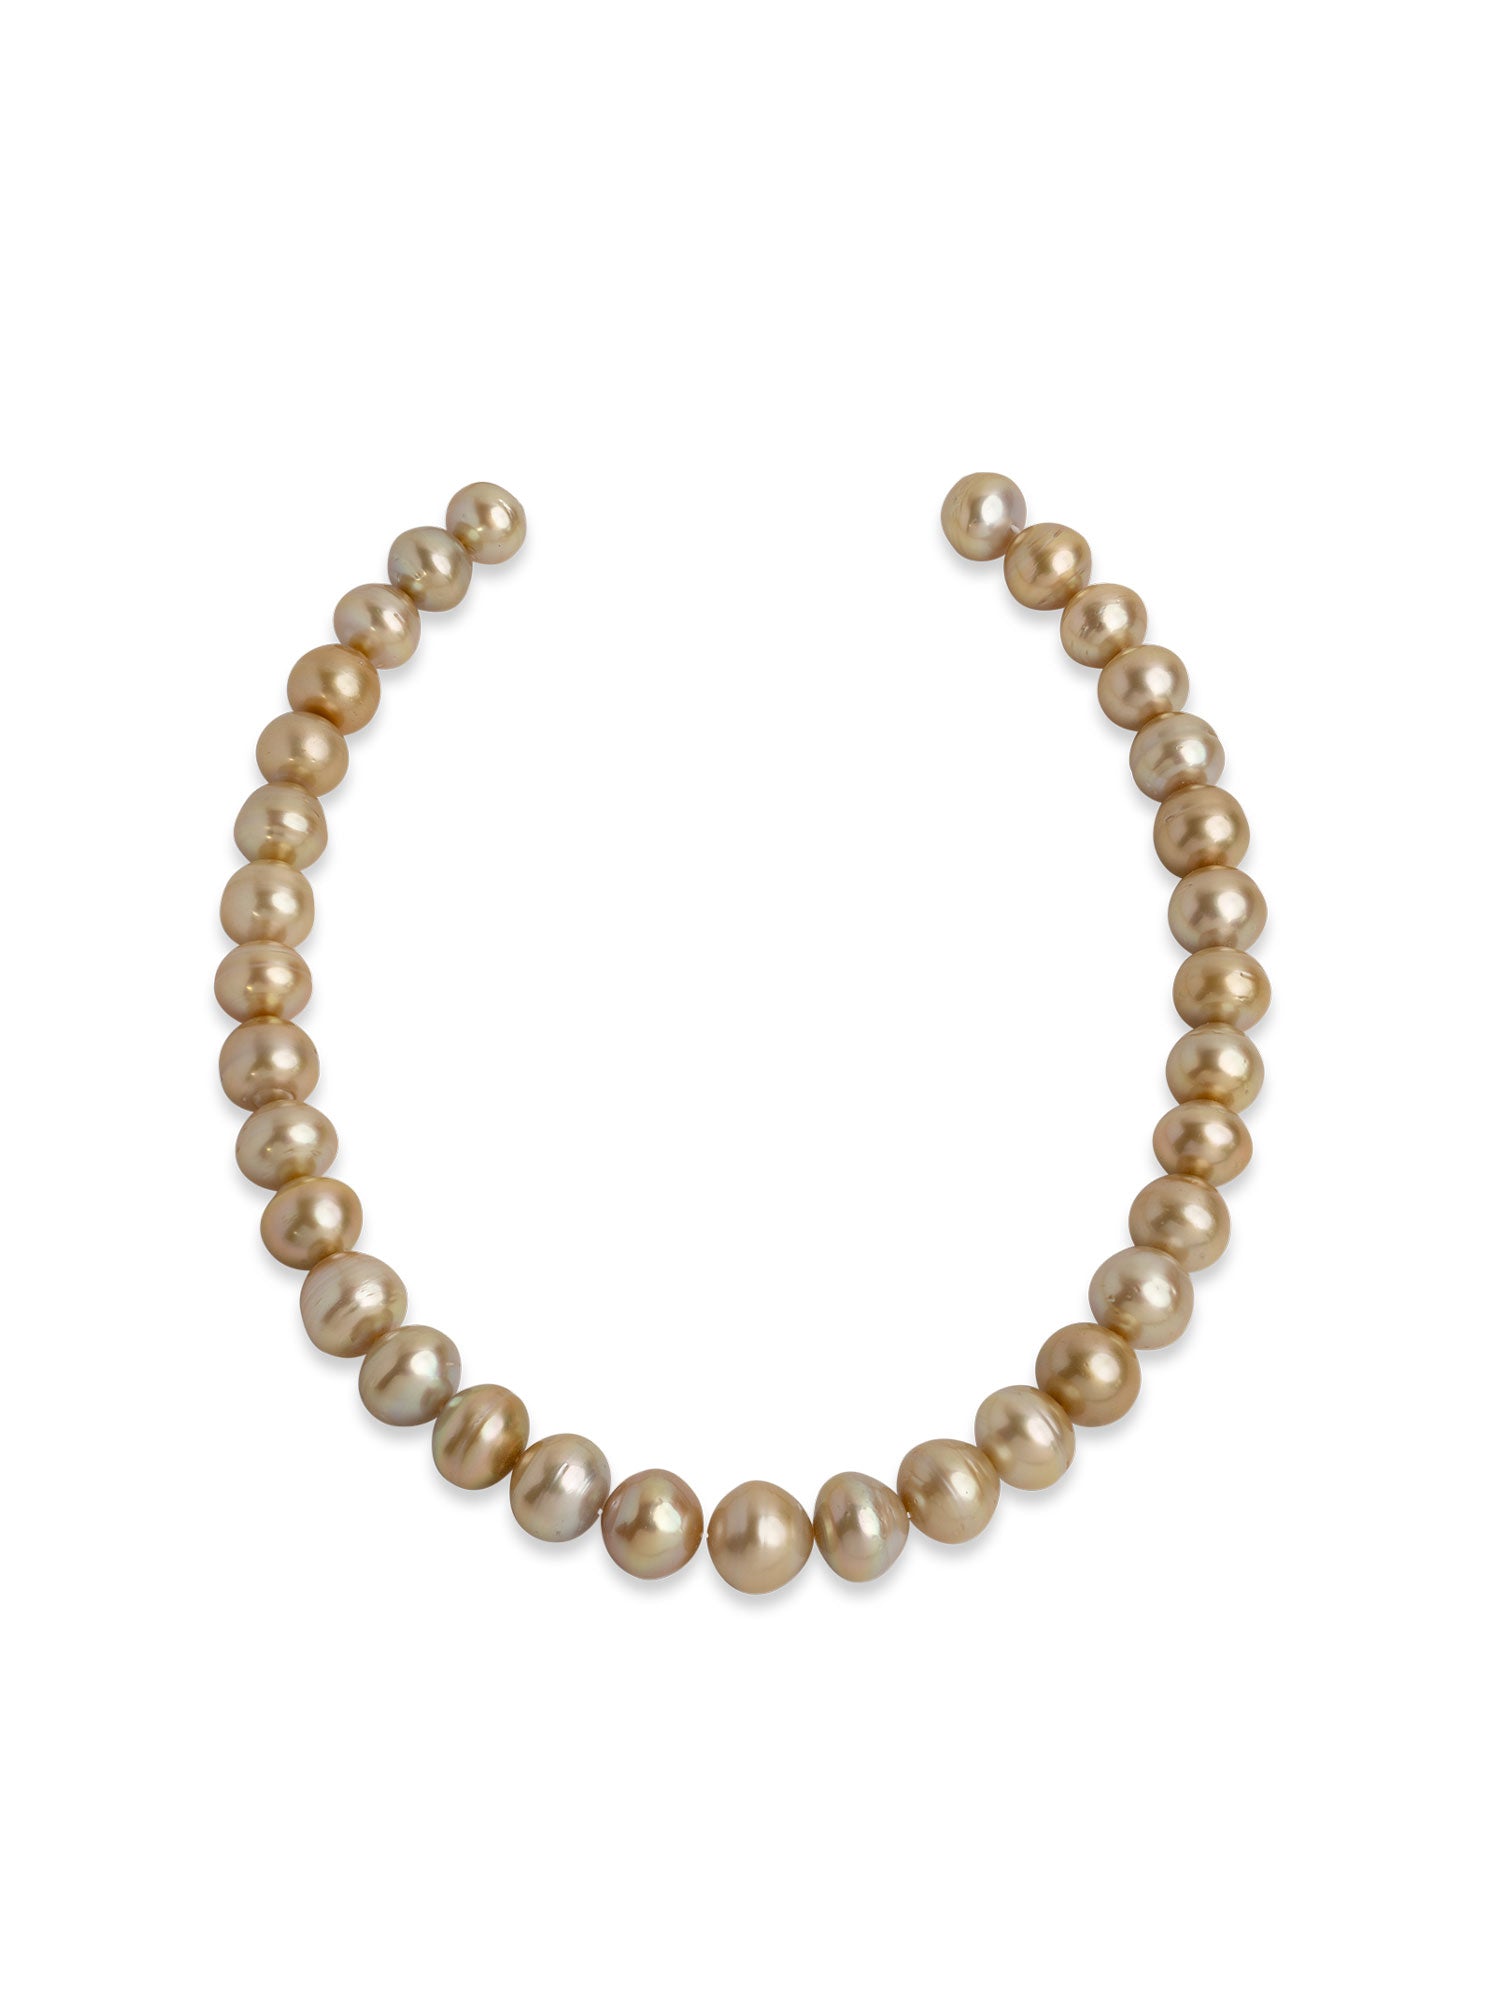 Collar de perlas australianas cultivadas naturales del mar del sur de la variedad dorada